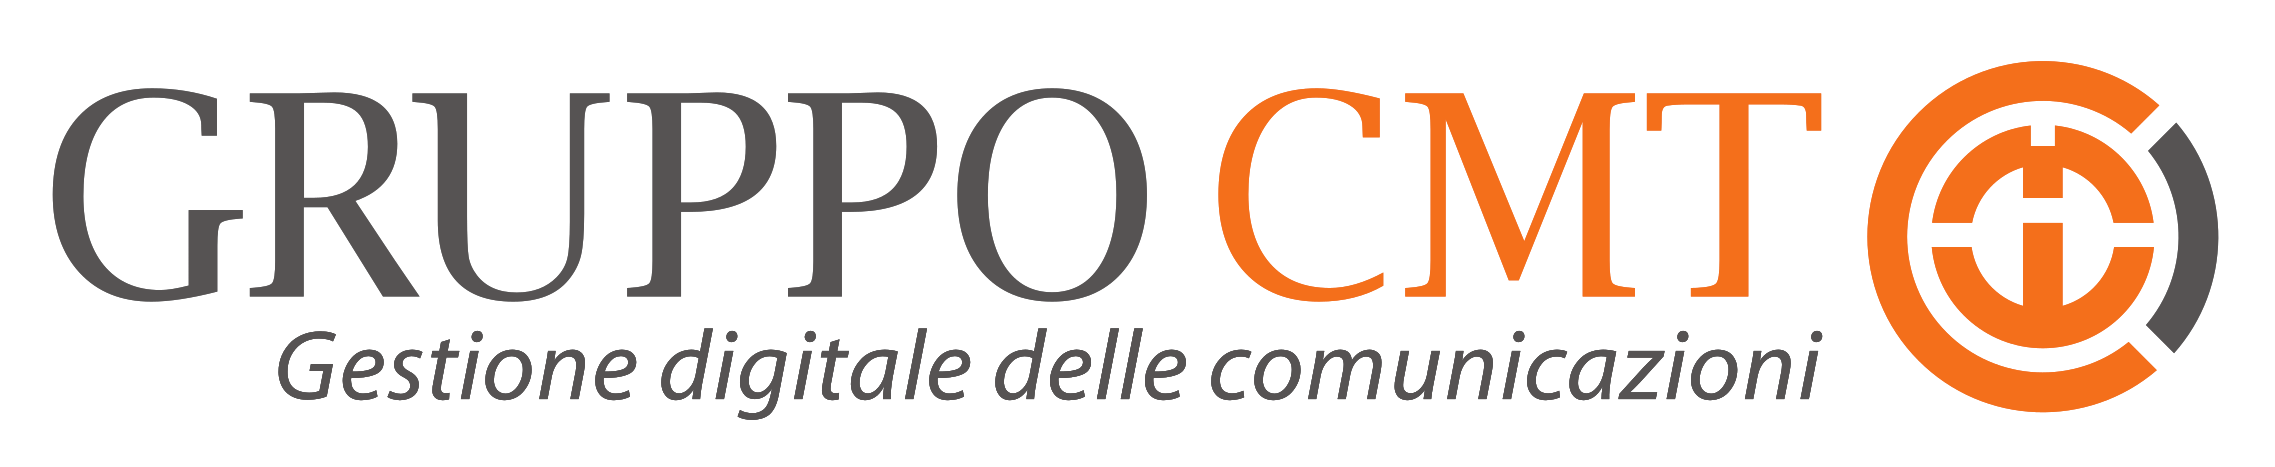 Logo-Gruppo-CMT